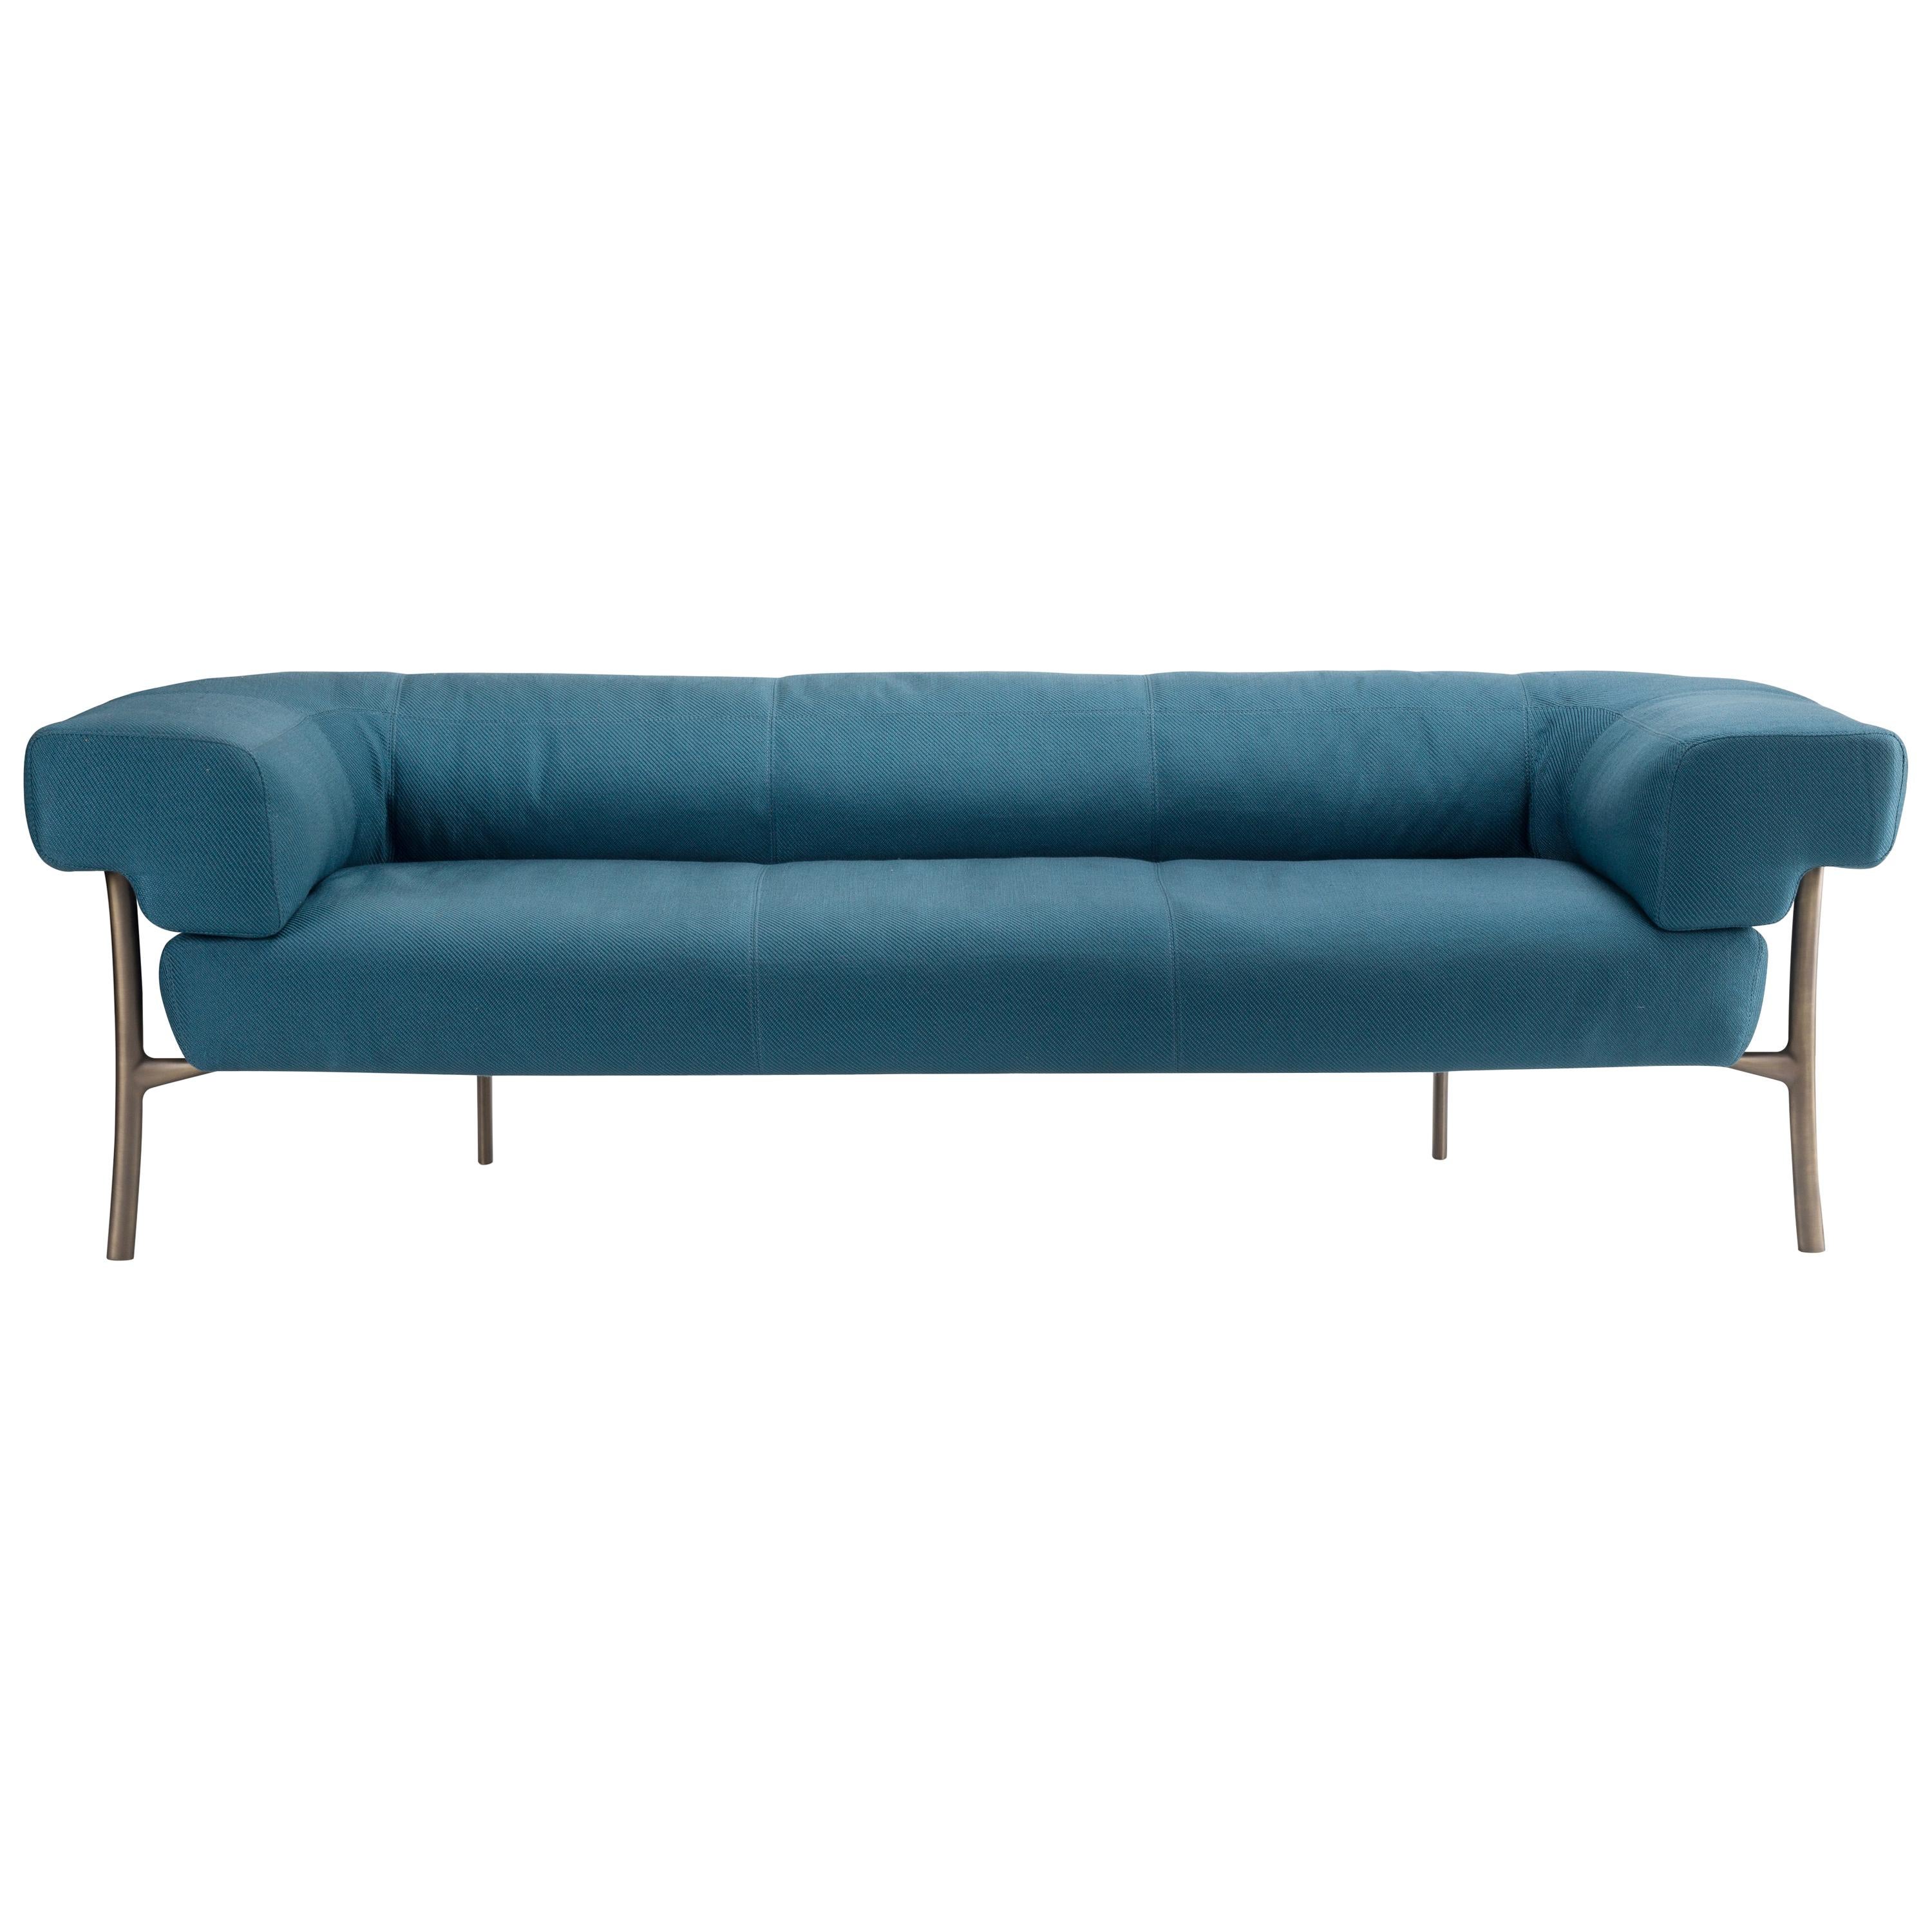 Katana Dreisitzer-Sofa aus blauem Stoff mit braunen, brünierten Messingbeinen